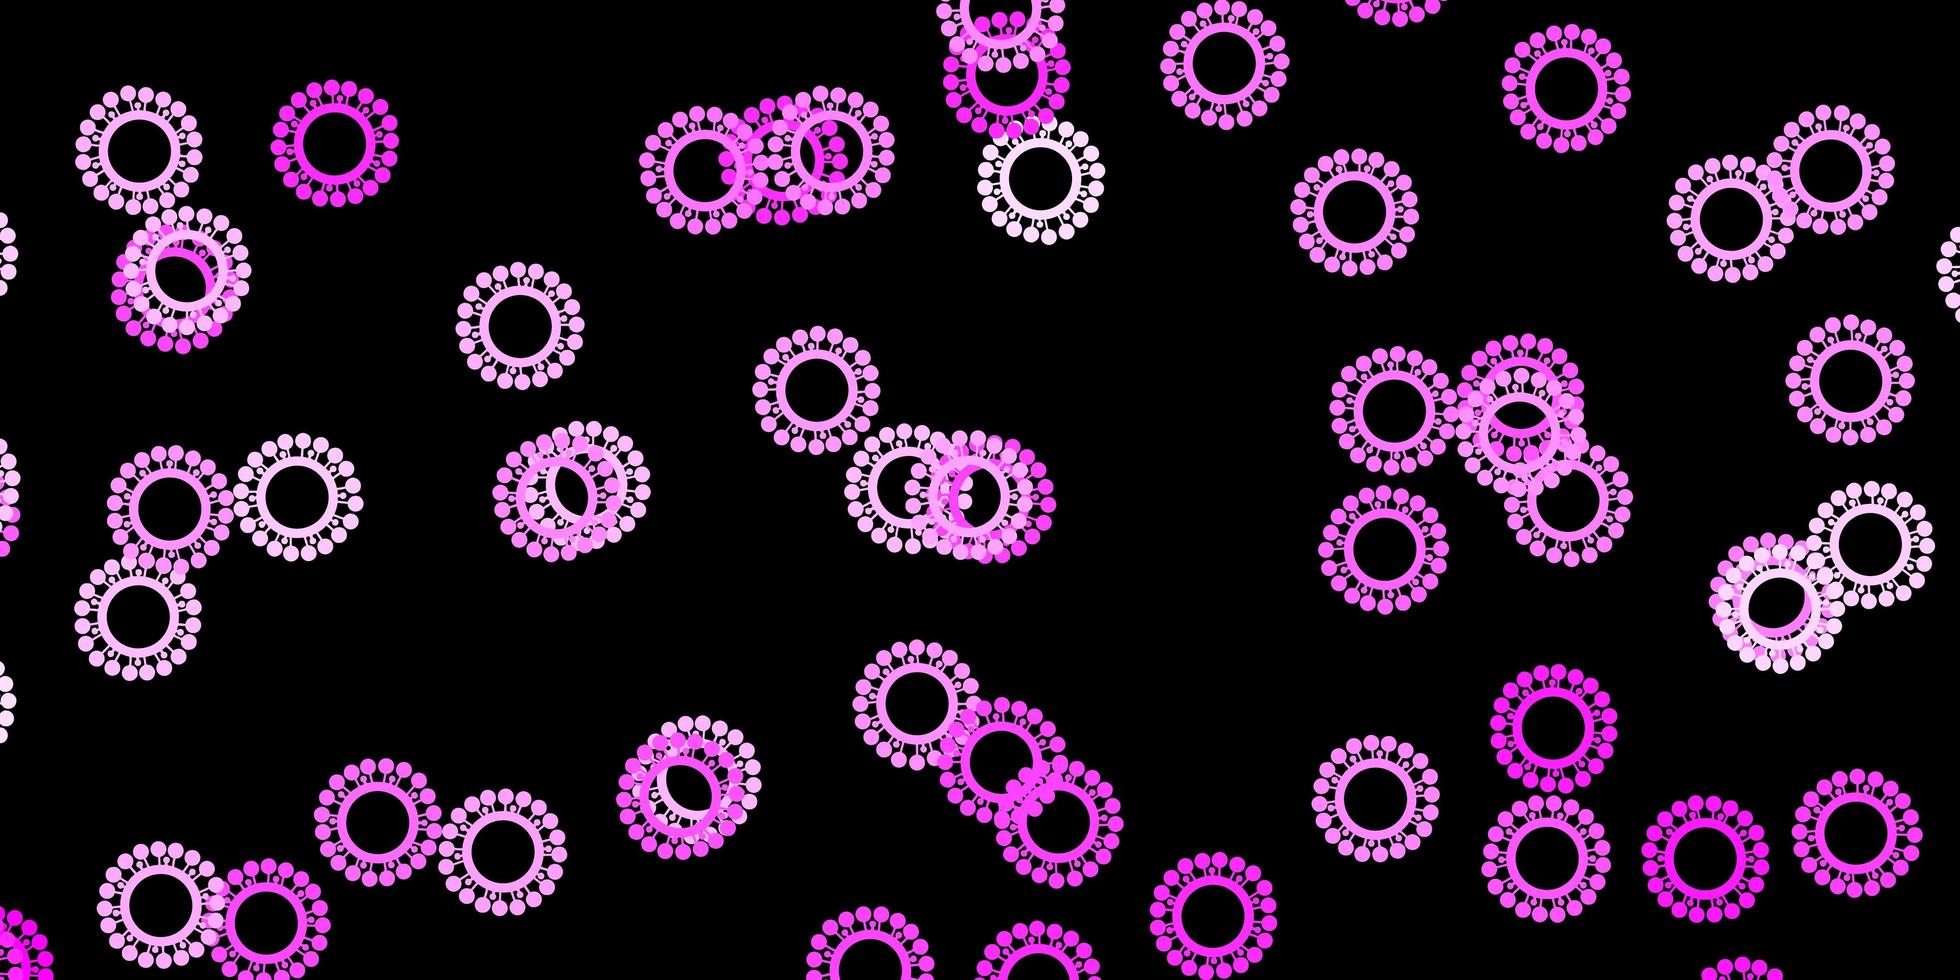 mörkrosa vektor bakgrund med virussymboler.